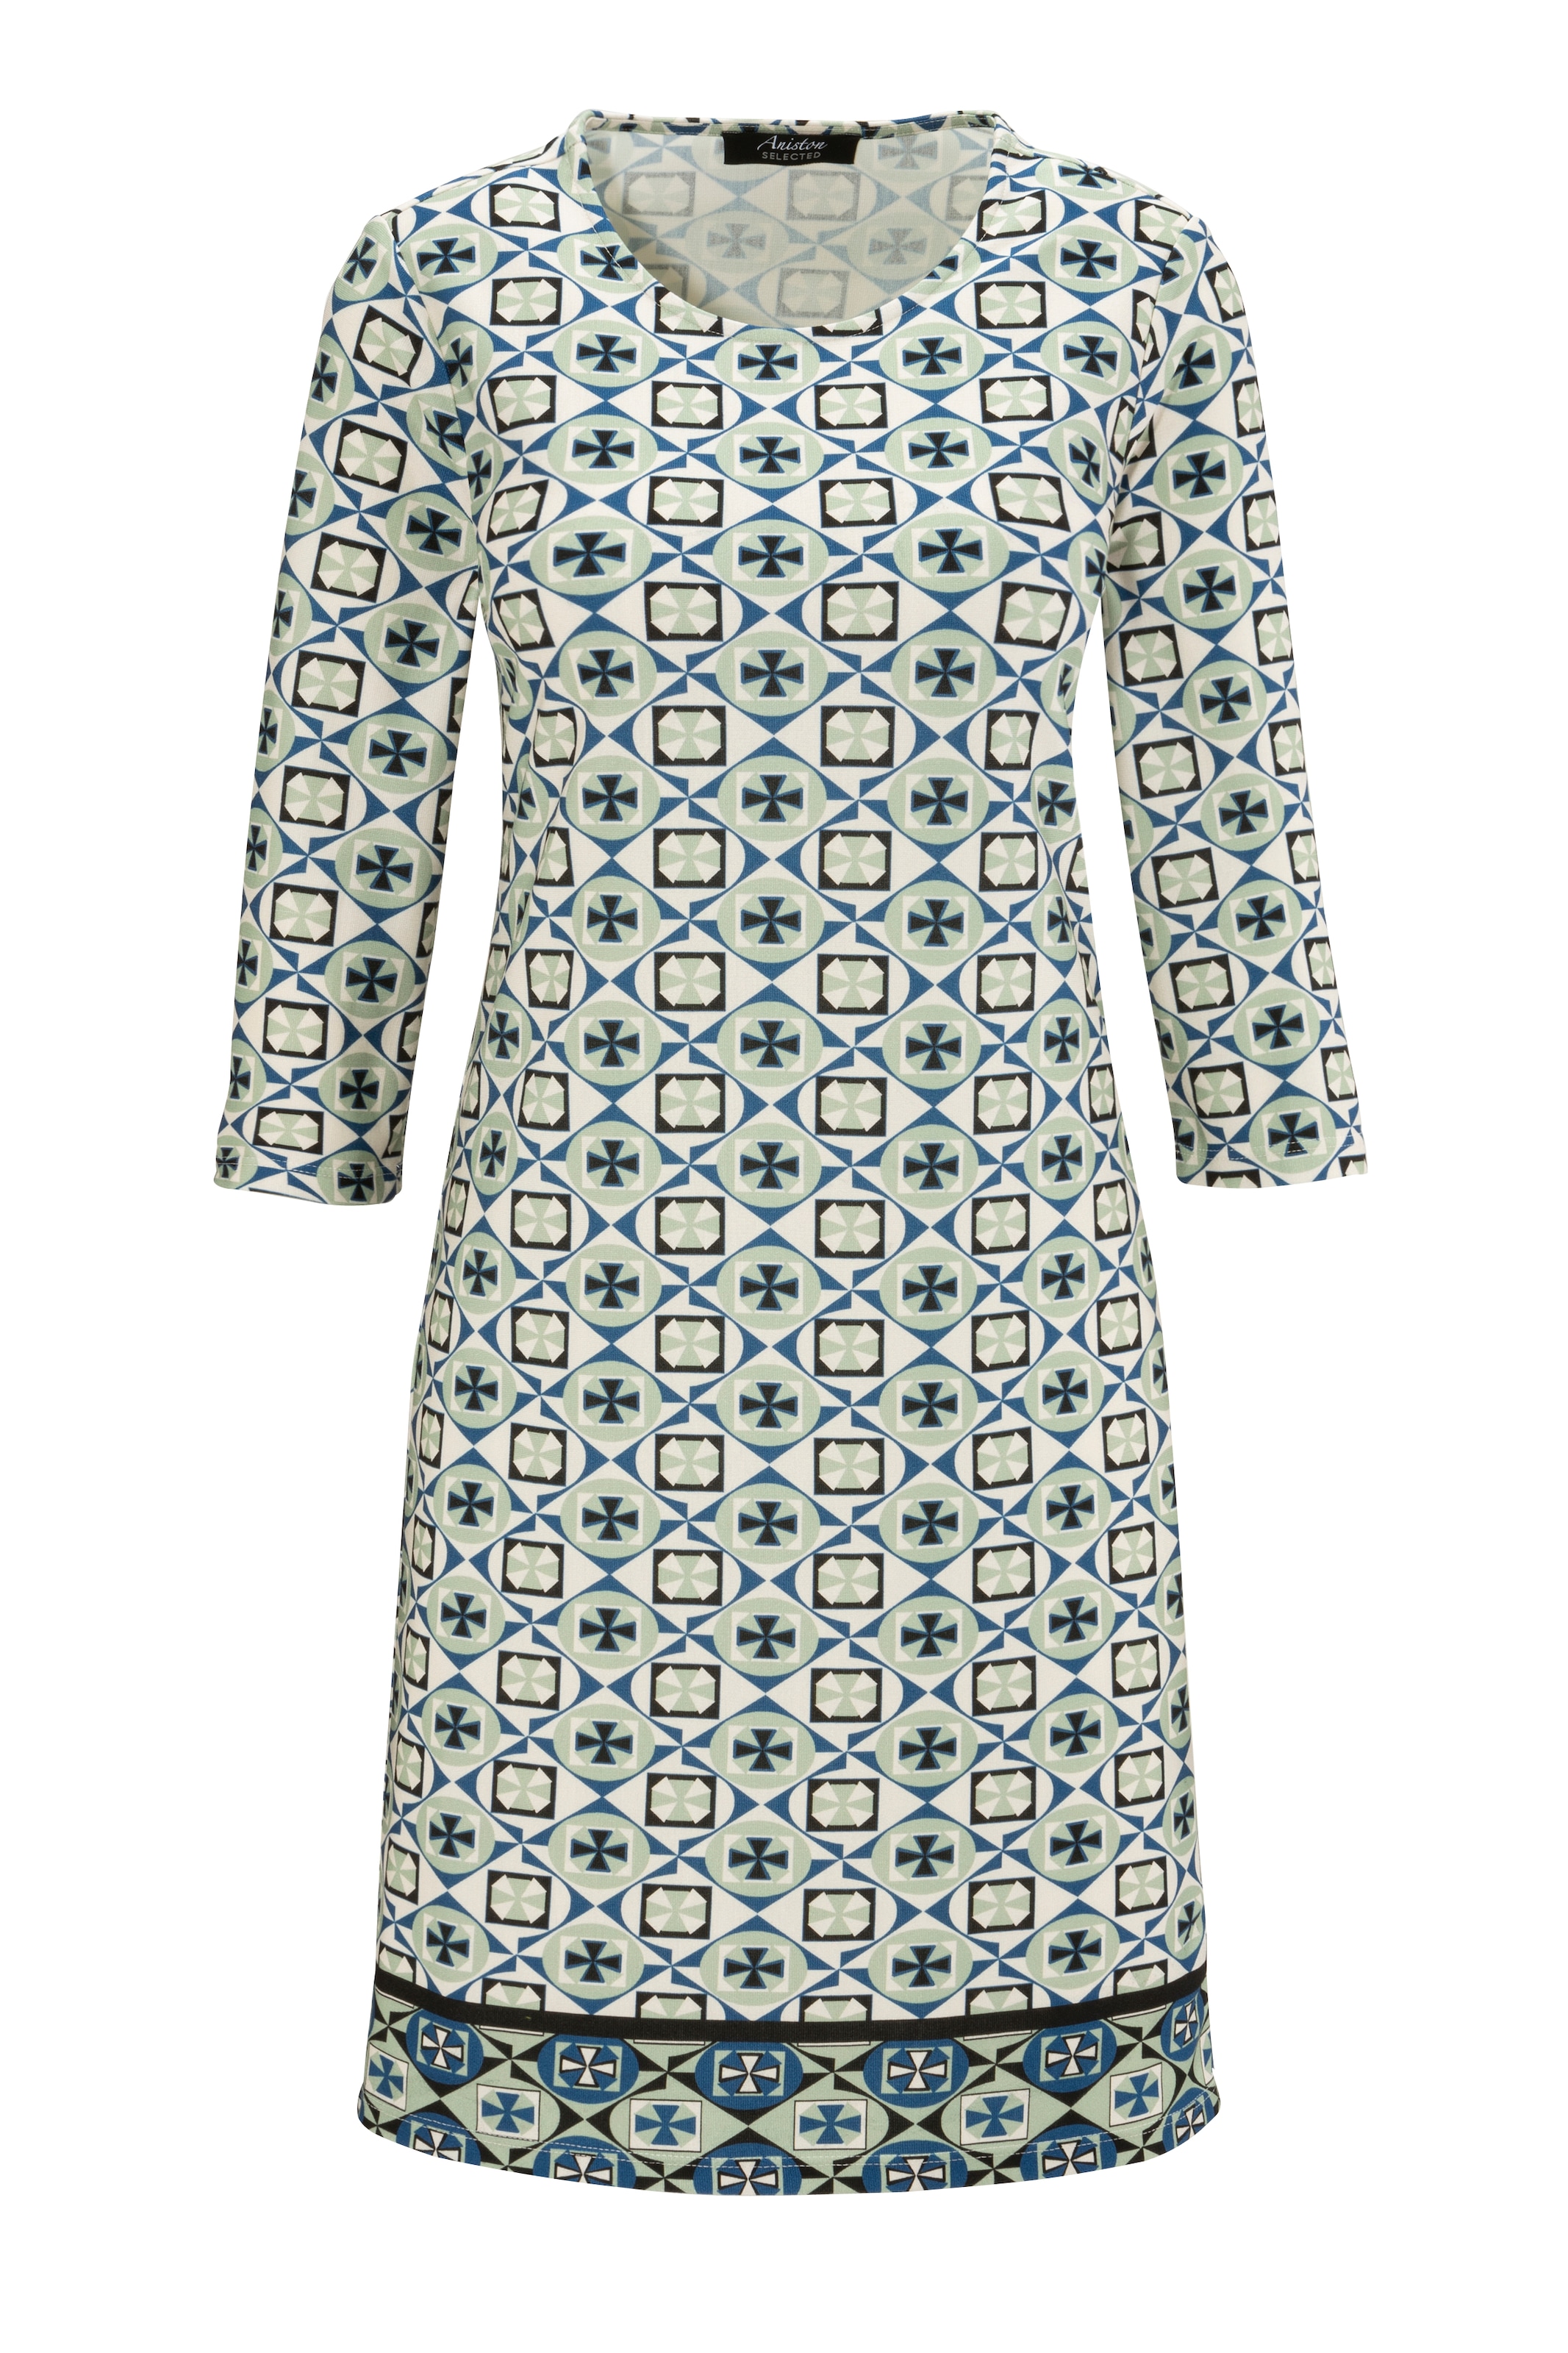 Aniston SELECTED Muster - kaufen mit KOLLEKTION geometrischem und online aufgedruckter Jerseykleid, NEUE Bordüre